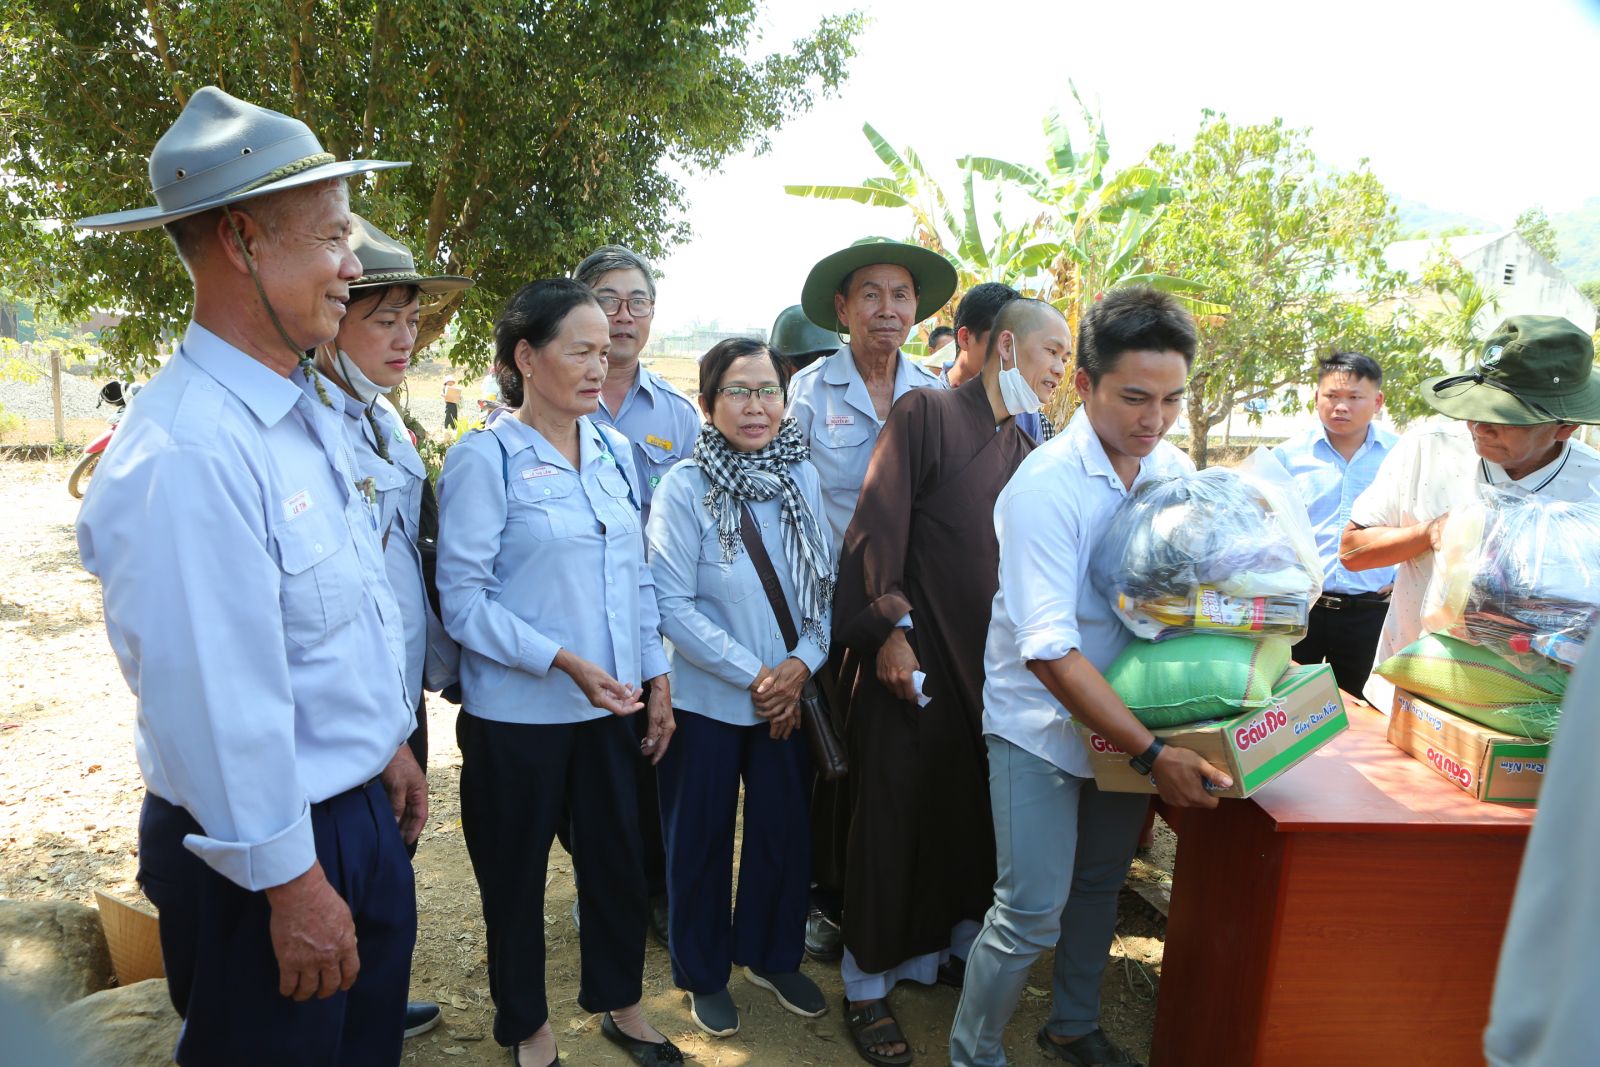 Phân Ban Gia Đình Phật Tử tỉnh Đắk Nông Kết nối Đoàn Từ Thiện Phát 200 xuất quà cho hộ Nghèo và 700 phần quà bánh kẹo cho Trẻ em.
